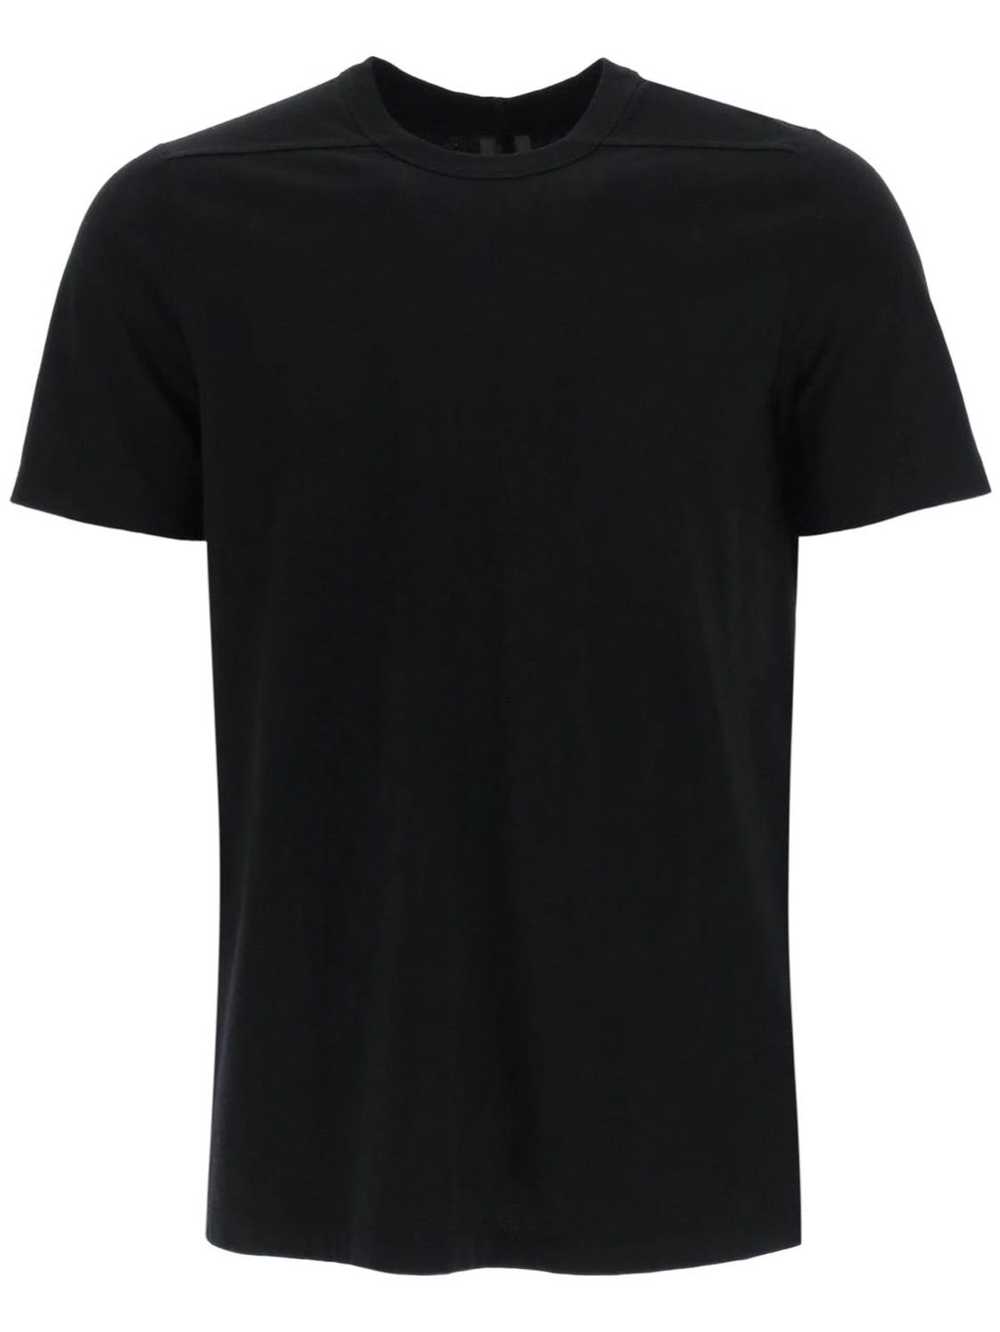 Rick Owens Level T-Shirt - image 1